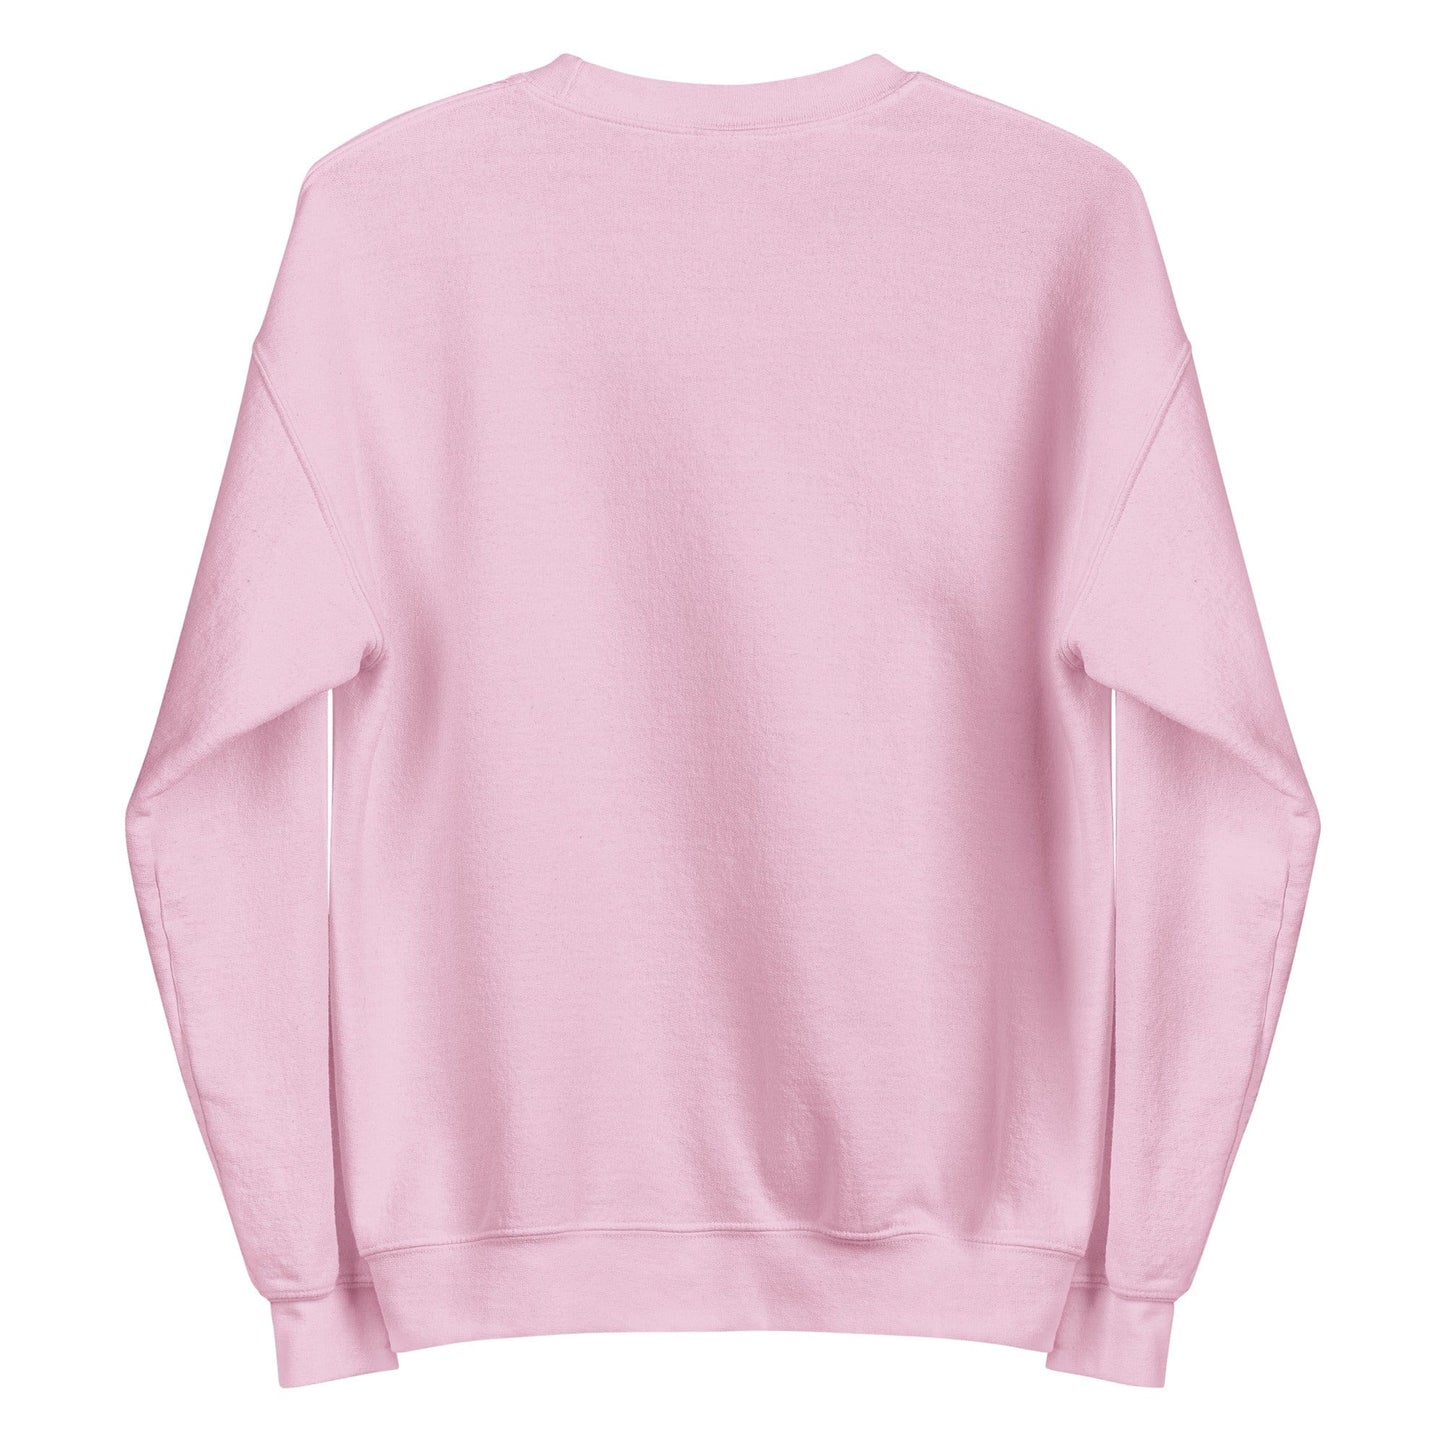 back-pink-genderless-hearts-pride-sweatshirt-by-feminist-define